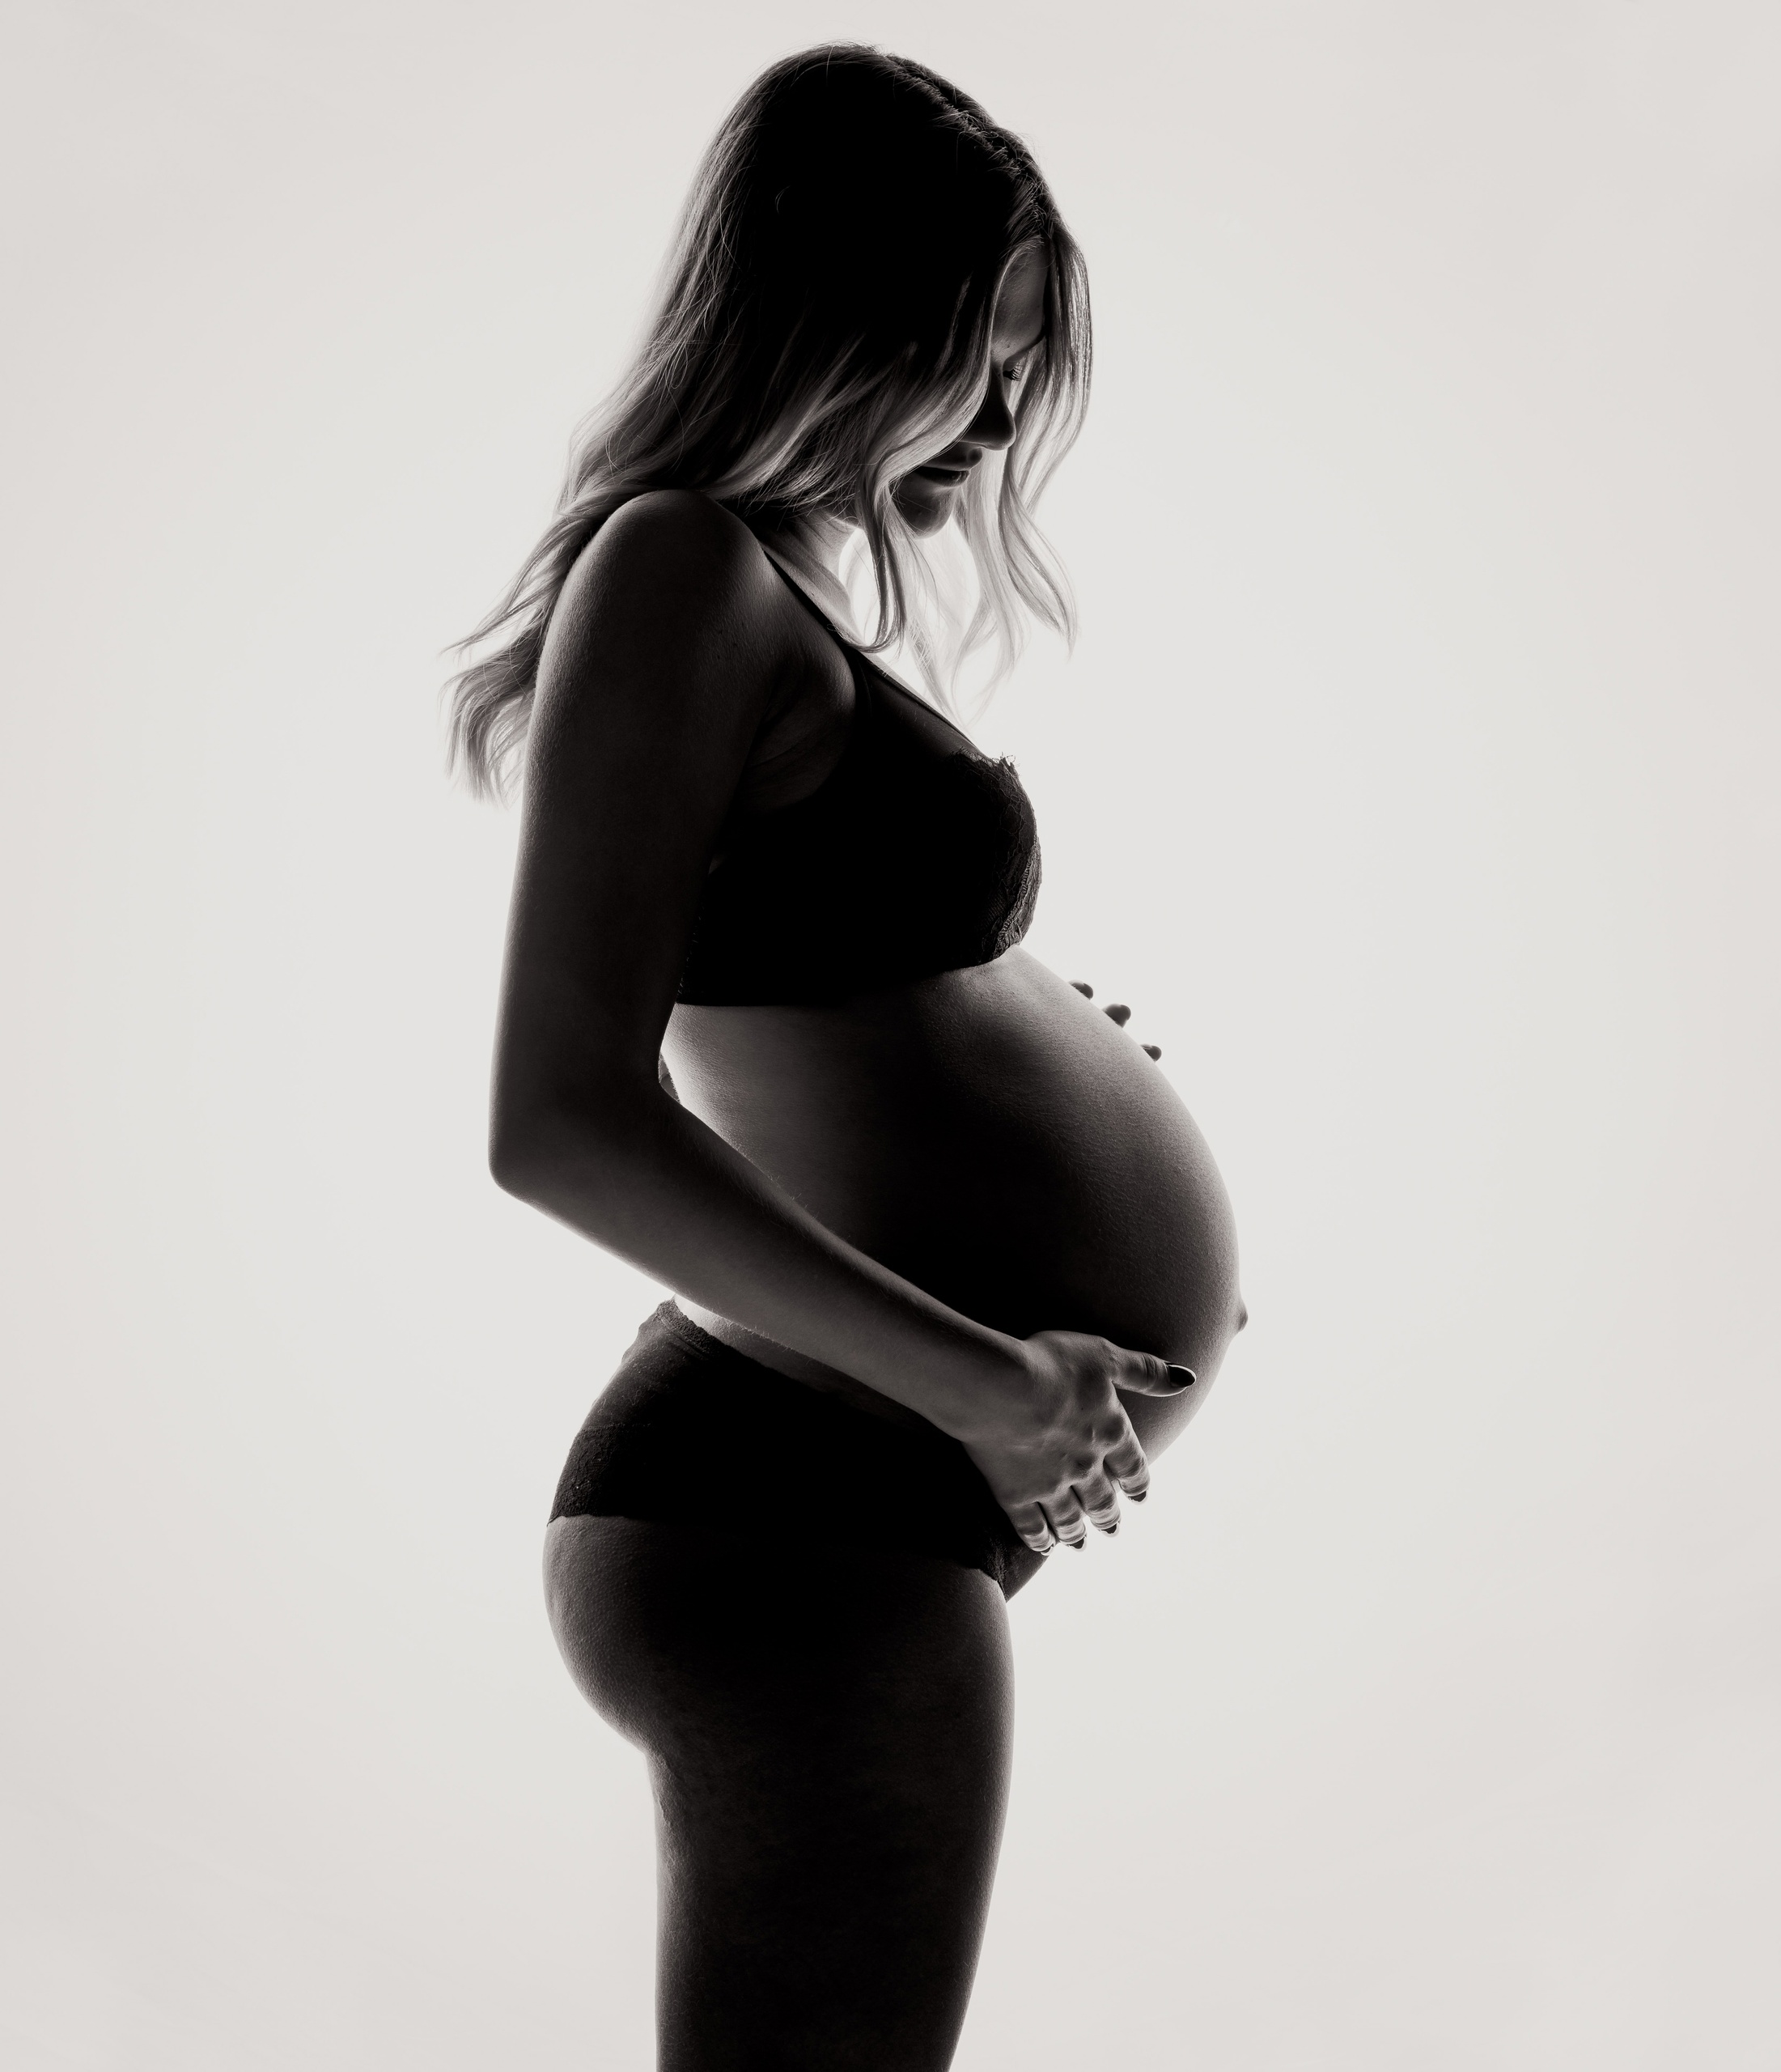 41 неделя беременности: никаких признаков родов и схваток нет, что делать